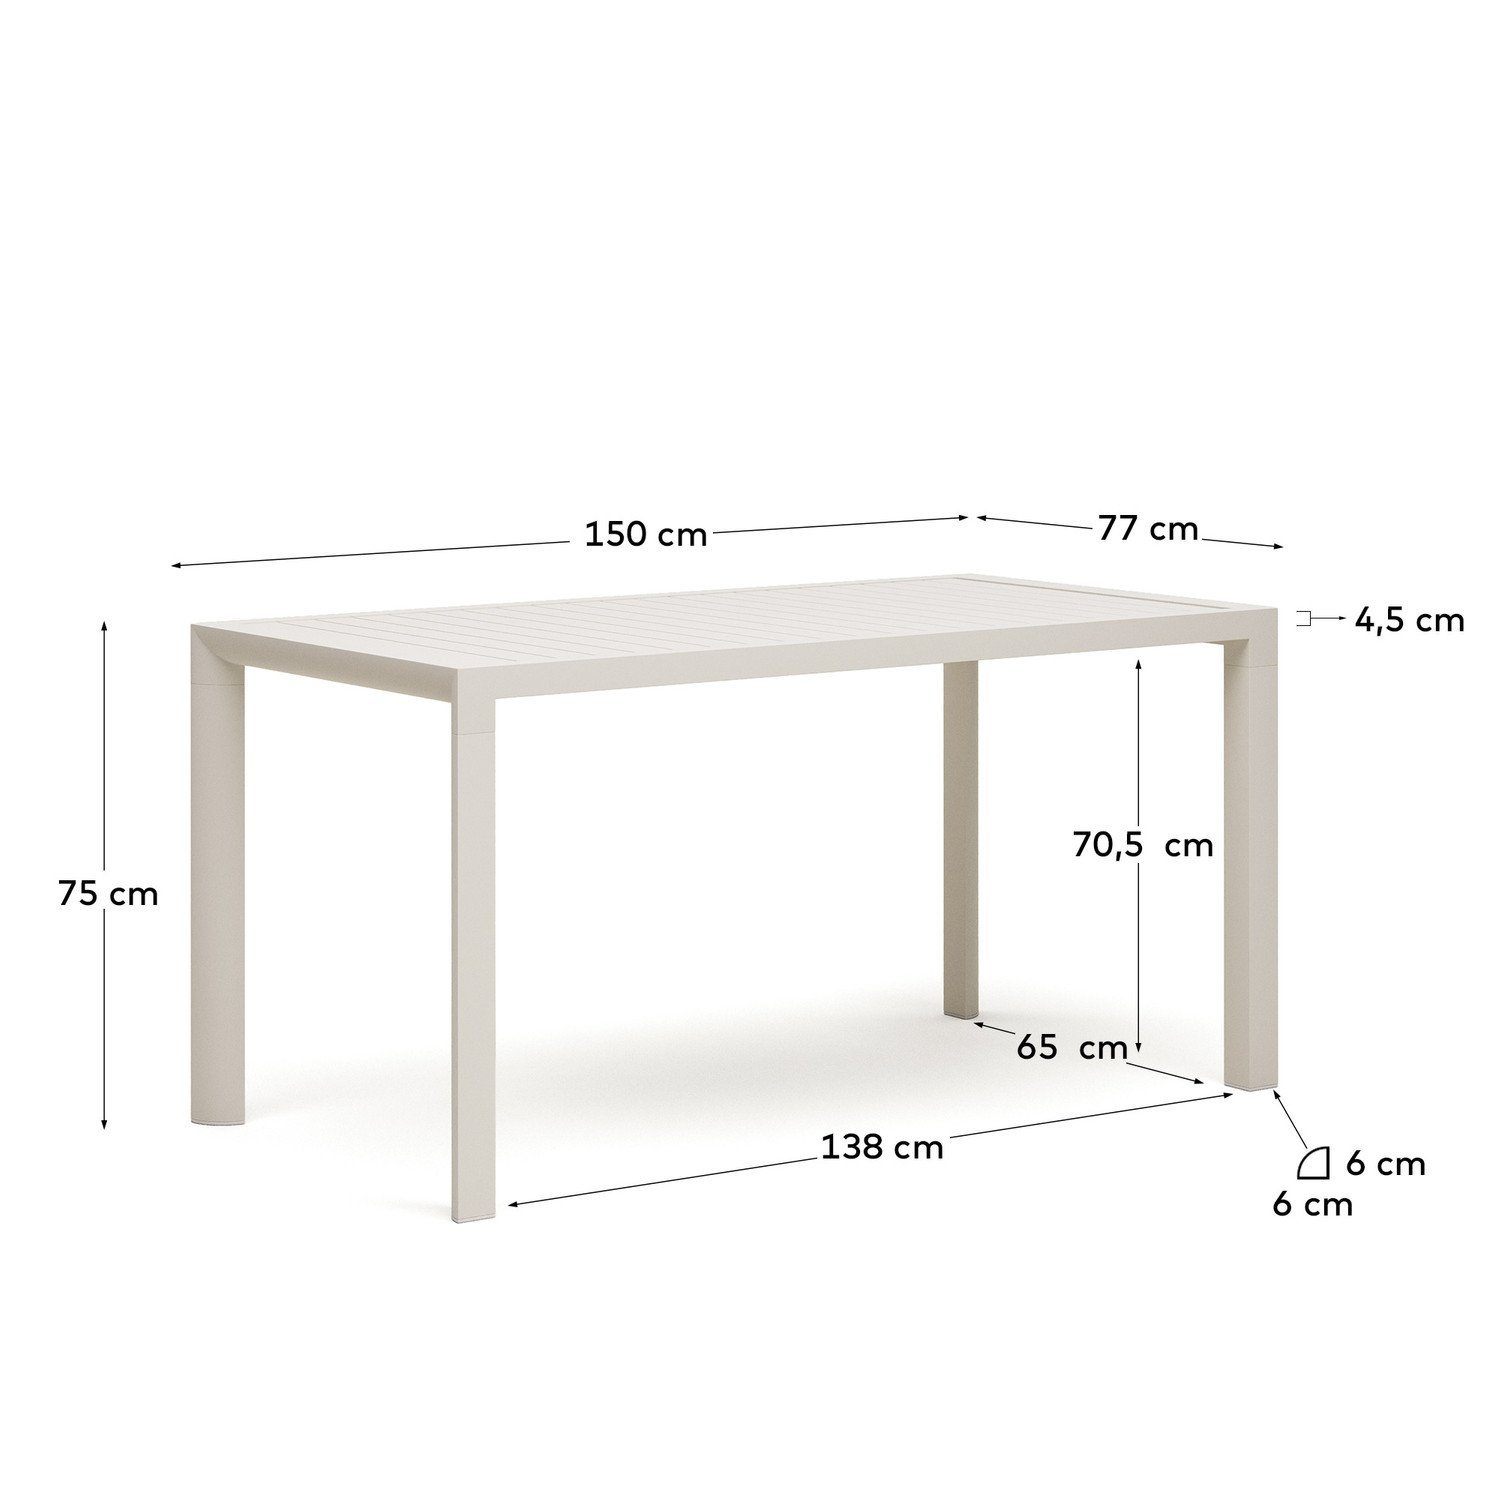 77 cm 75 Natur24 Gartentisch x Esstisch x Weiß Culip 150 Tisch Esstisch Aluminium